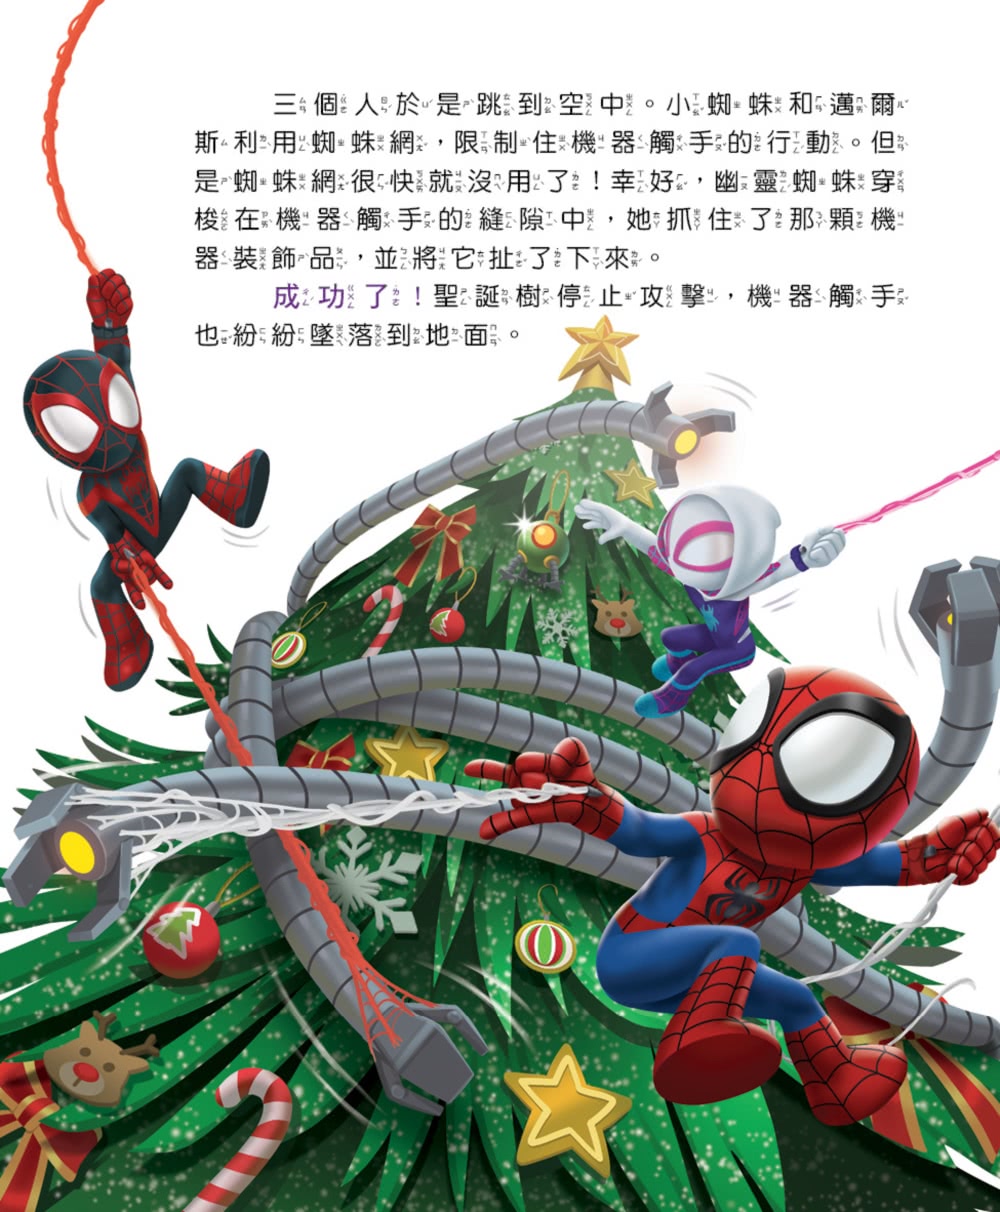 蜘蛛人與他的神奇朋友們：蜘蛛小隊過聖誕！（首刷贈品：限量「拯救聖誕」蜘蛛小隊貼紙）